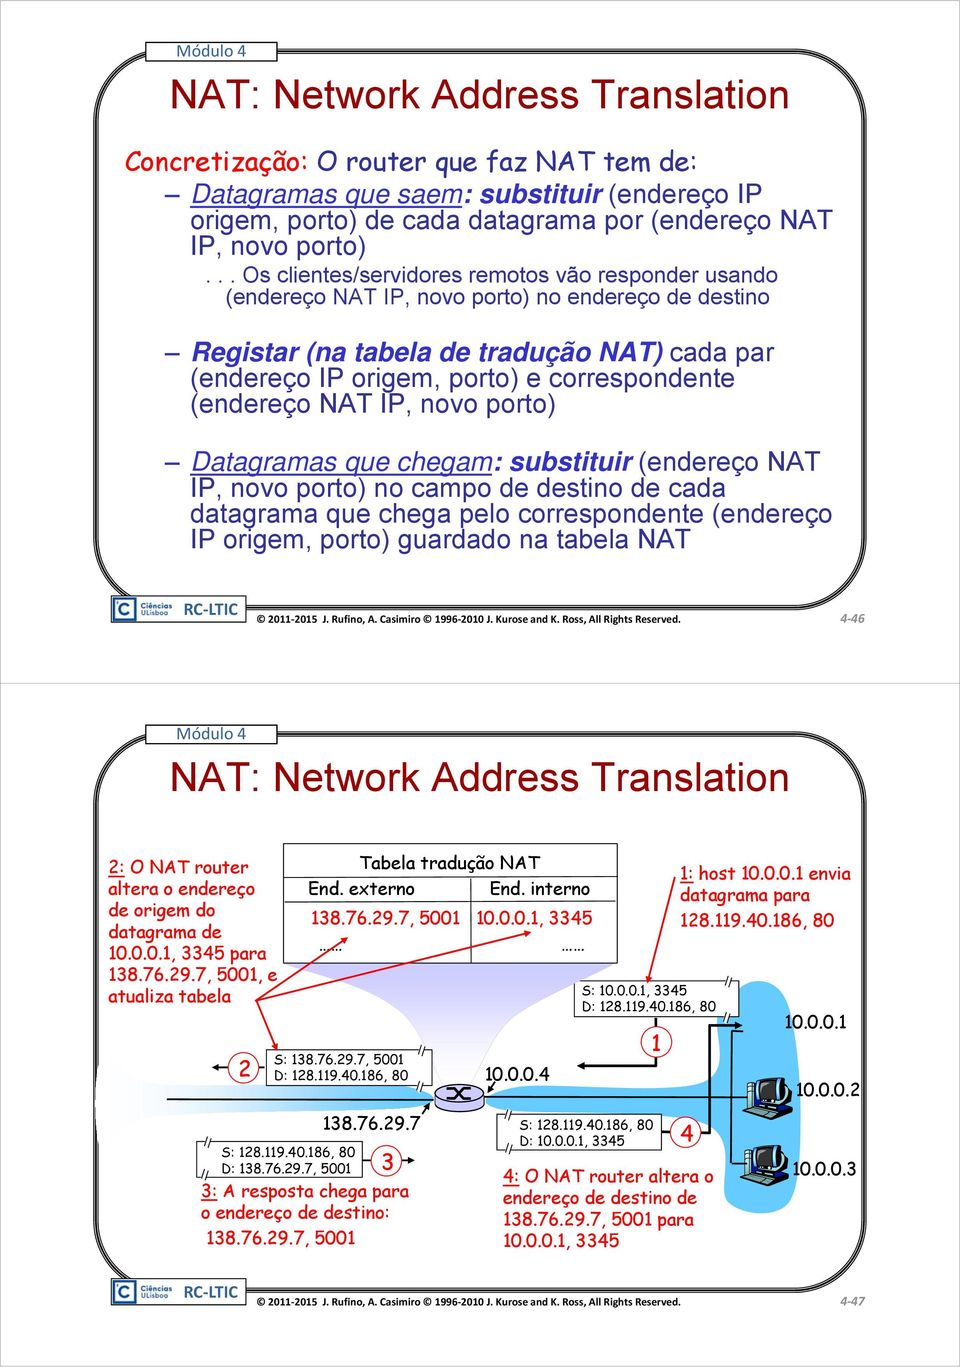 (endereço NAT IP, novo porto) Datagramas que chegam: substituir (endereço NAT IP, novo porto) no campo de destino de cada datagrama que chega pelo correspondente (endereço IP origem, porto) guardado